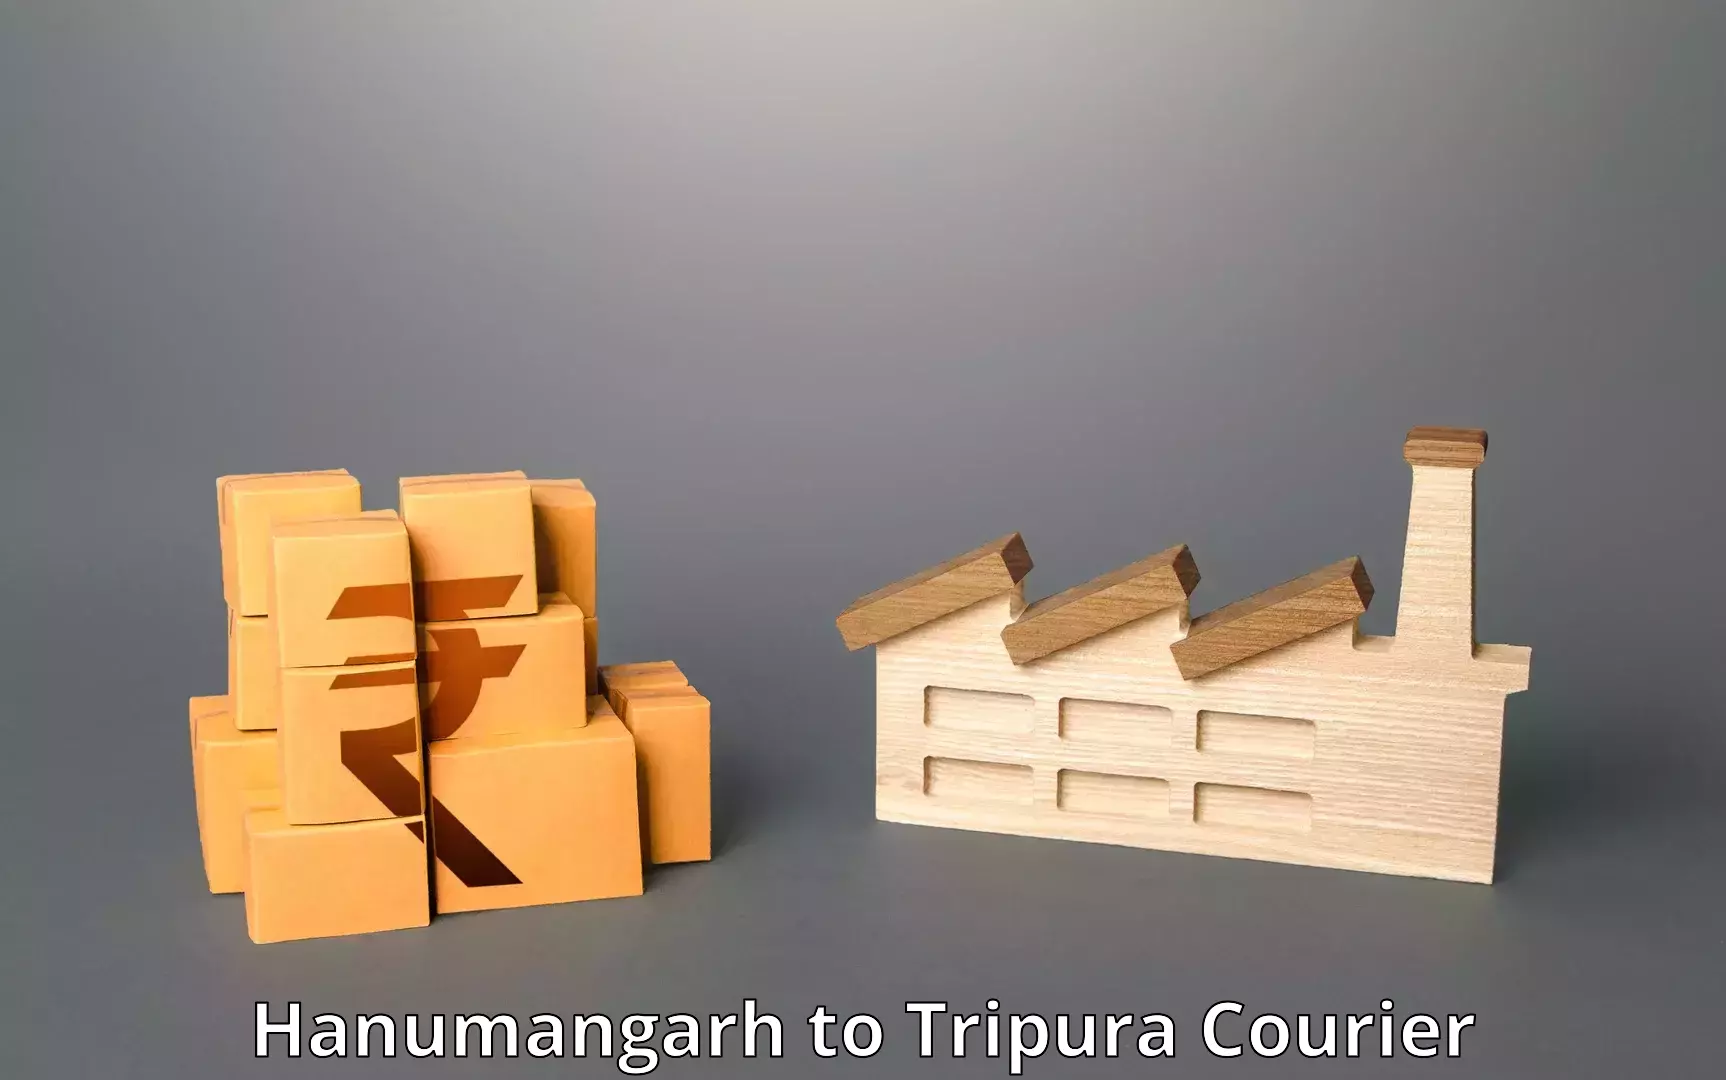 Door-to-door freight service Hanumangarh to Udaipur Tripura